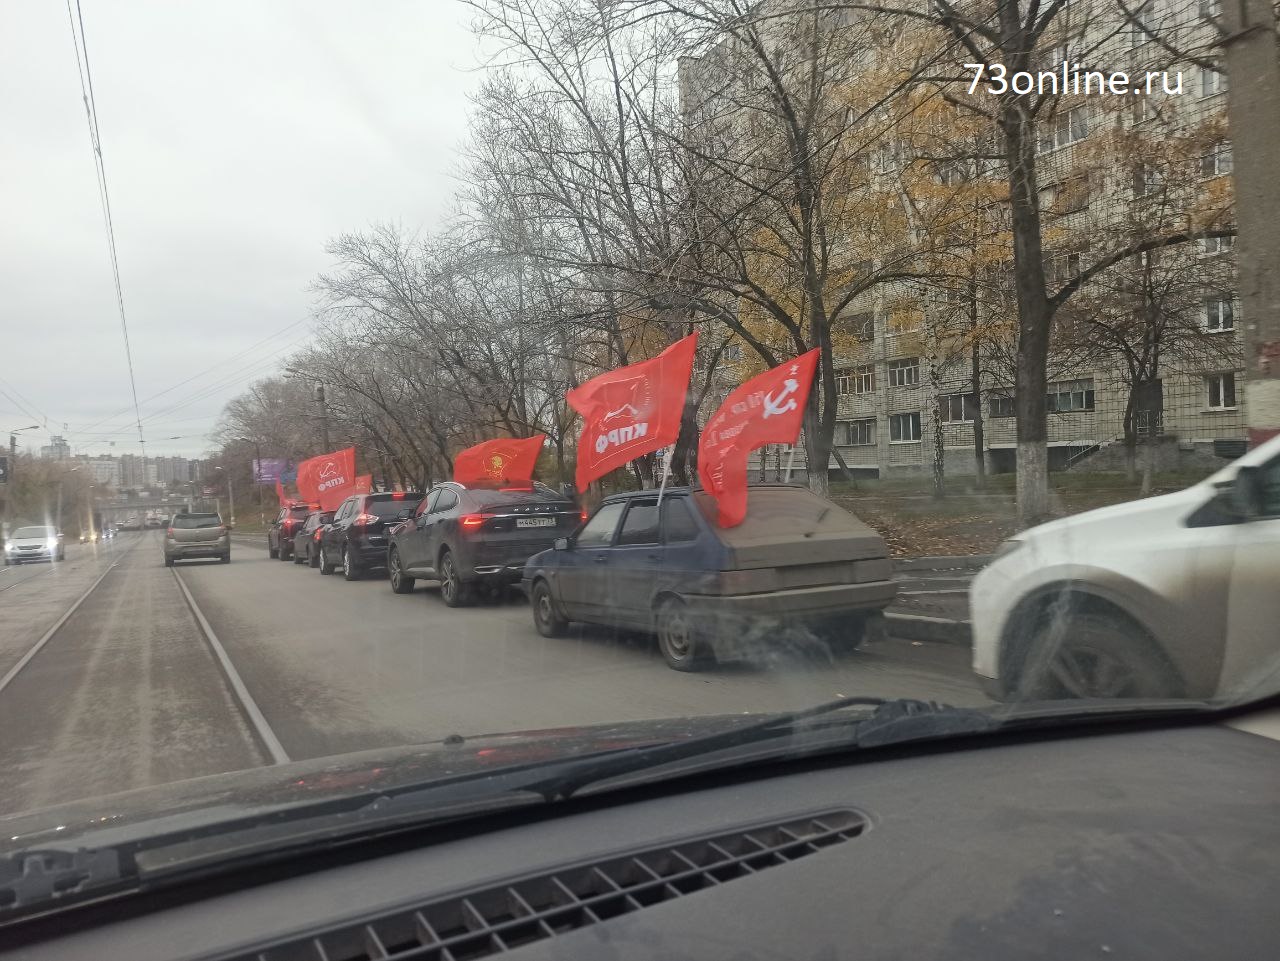 Автопробег в День комсомола: по Ульяновску проехала колонна с флагами СССР и КПРФ